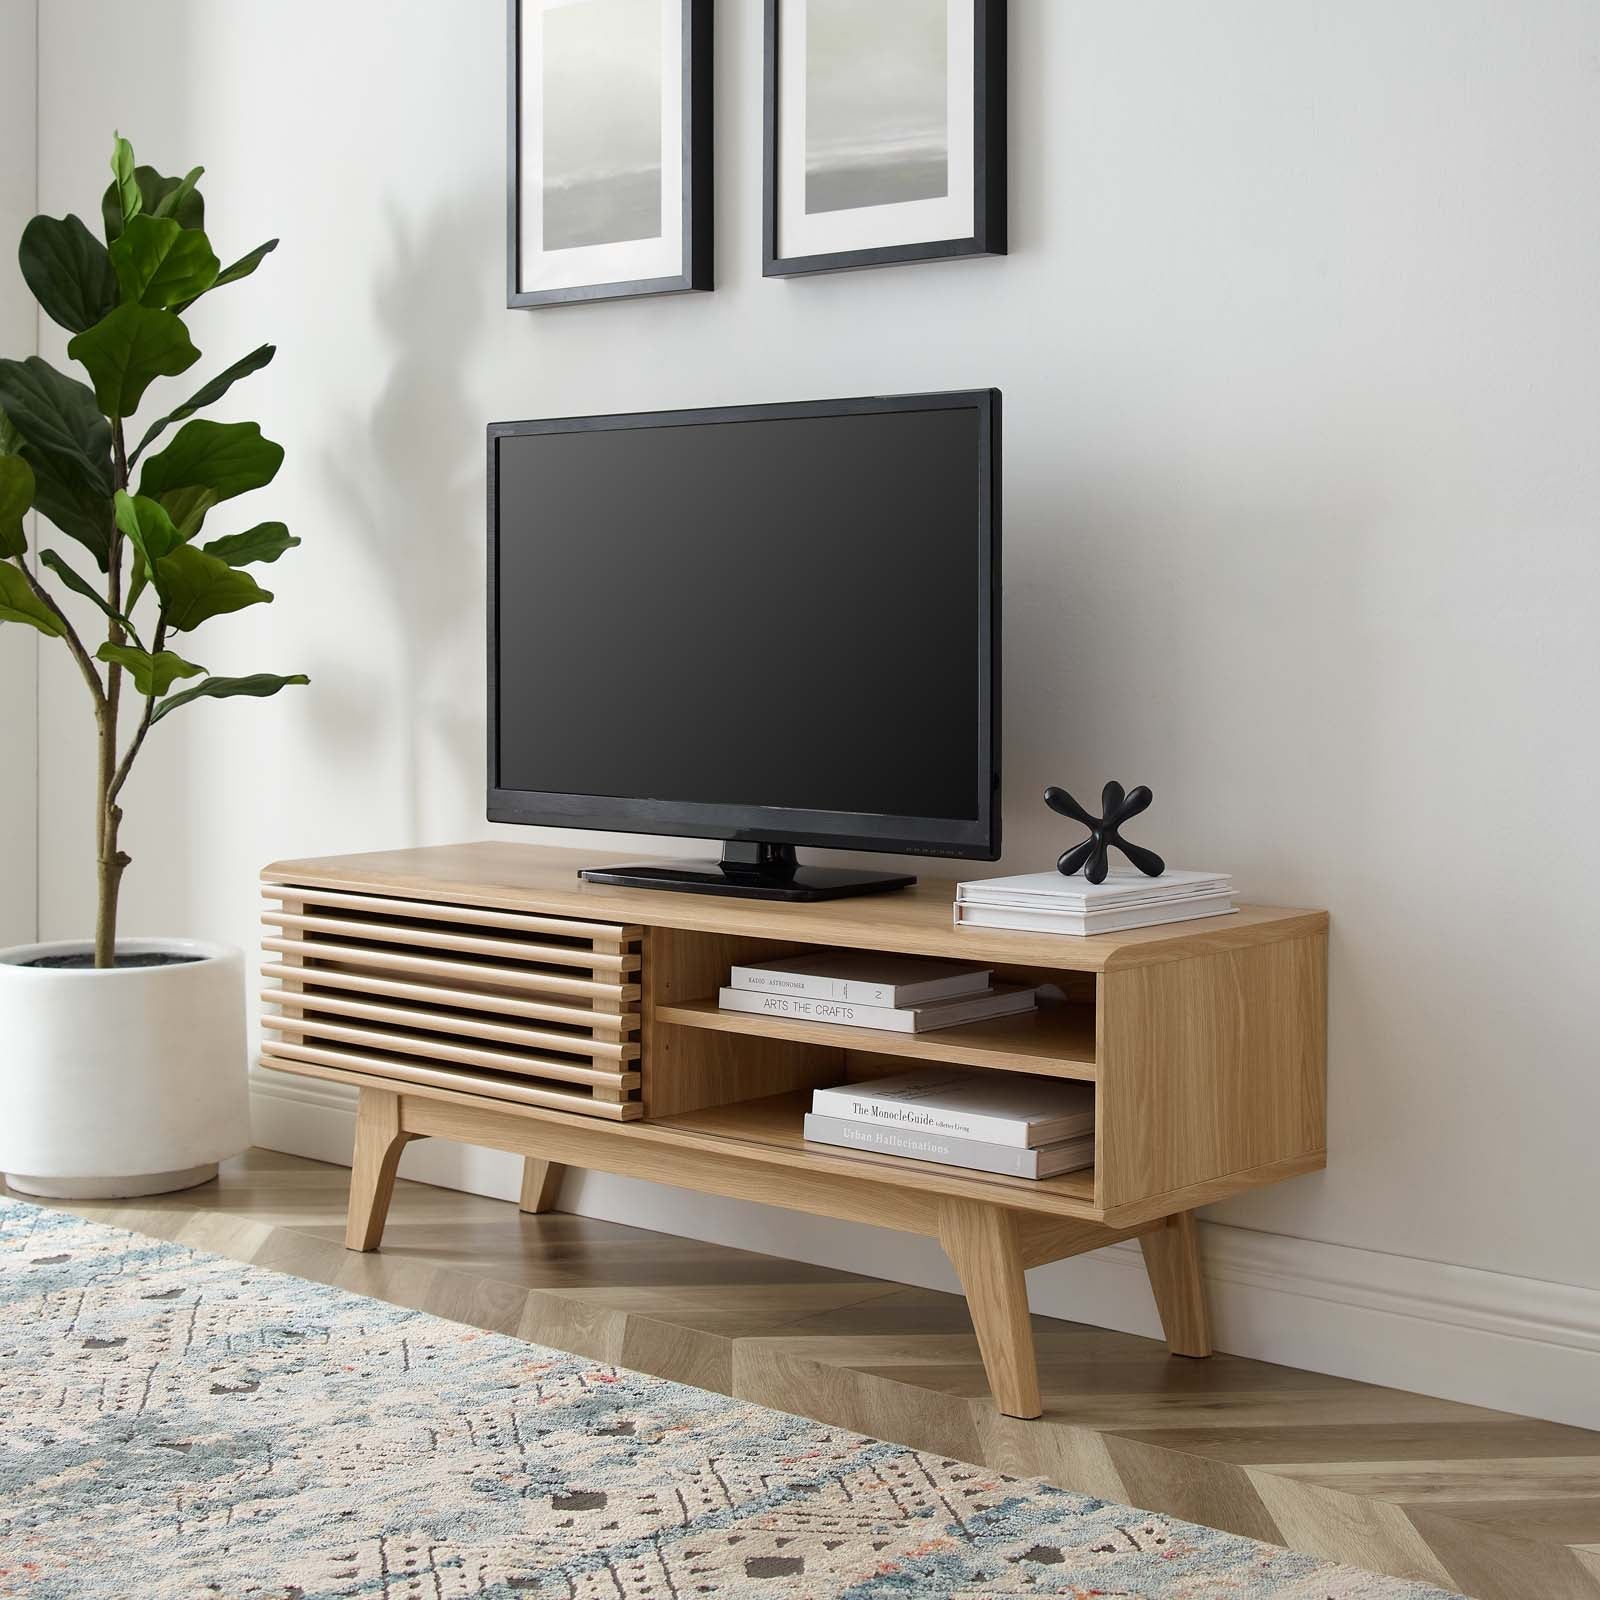 Mueble de 48” para TV Niklas color roble en una sala.